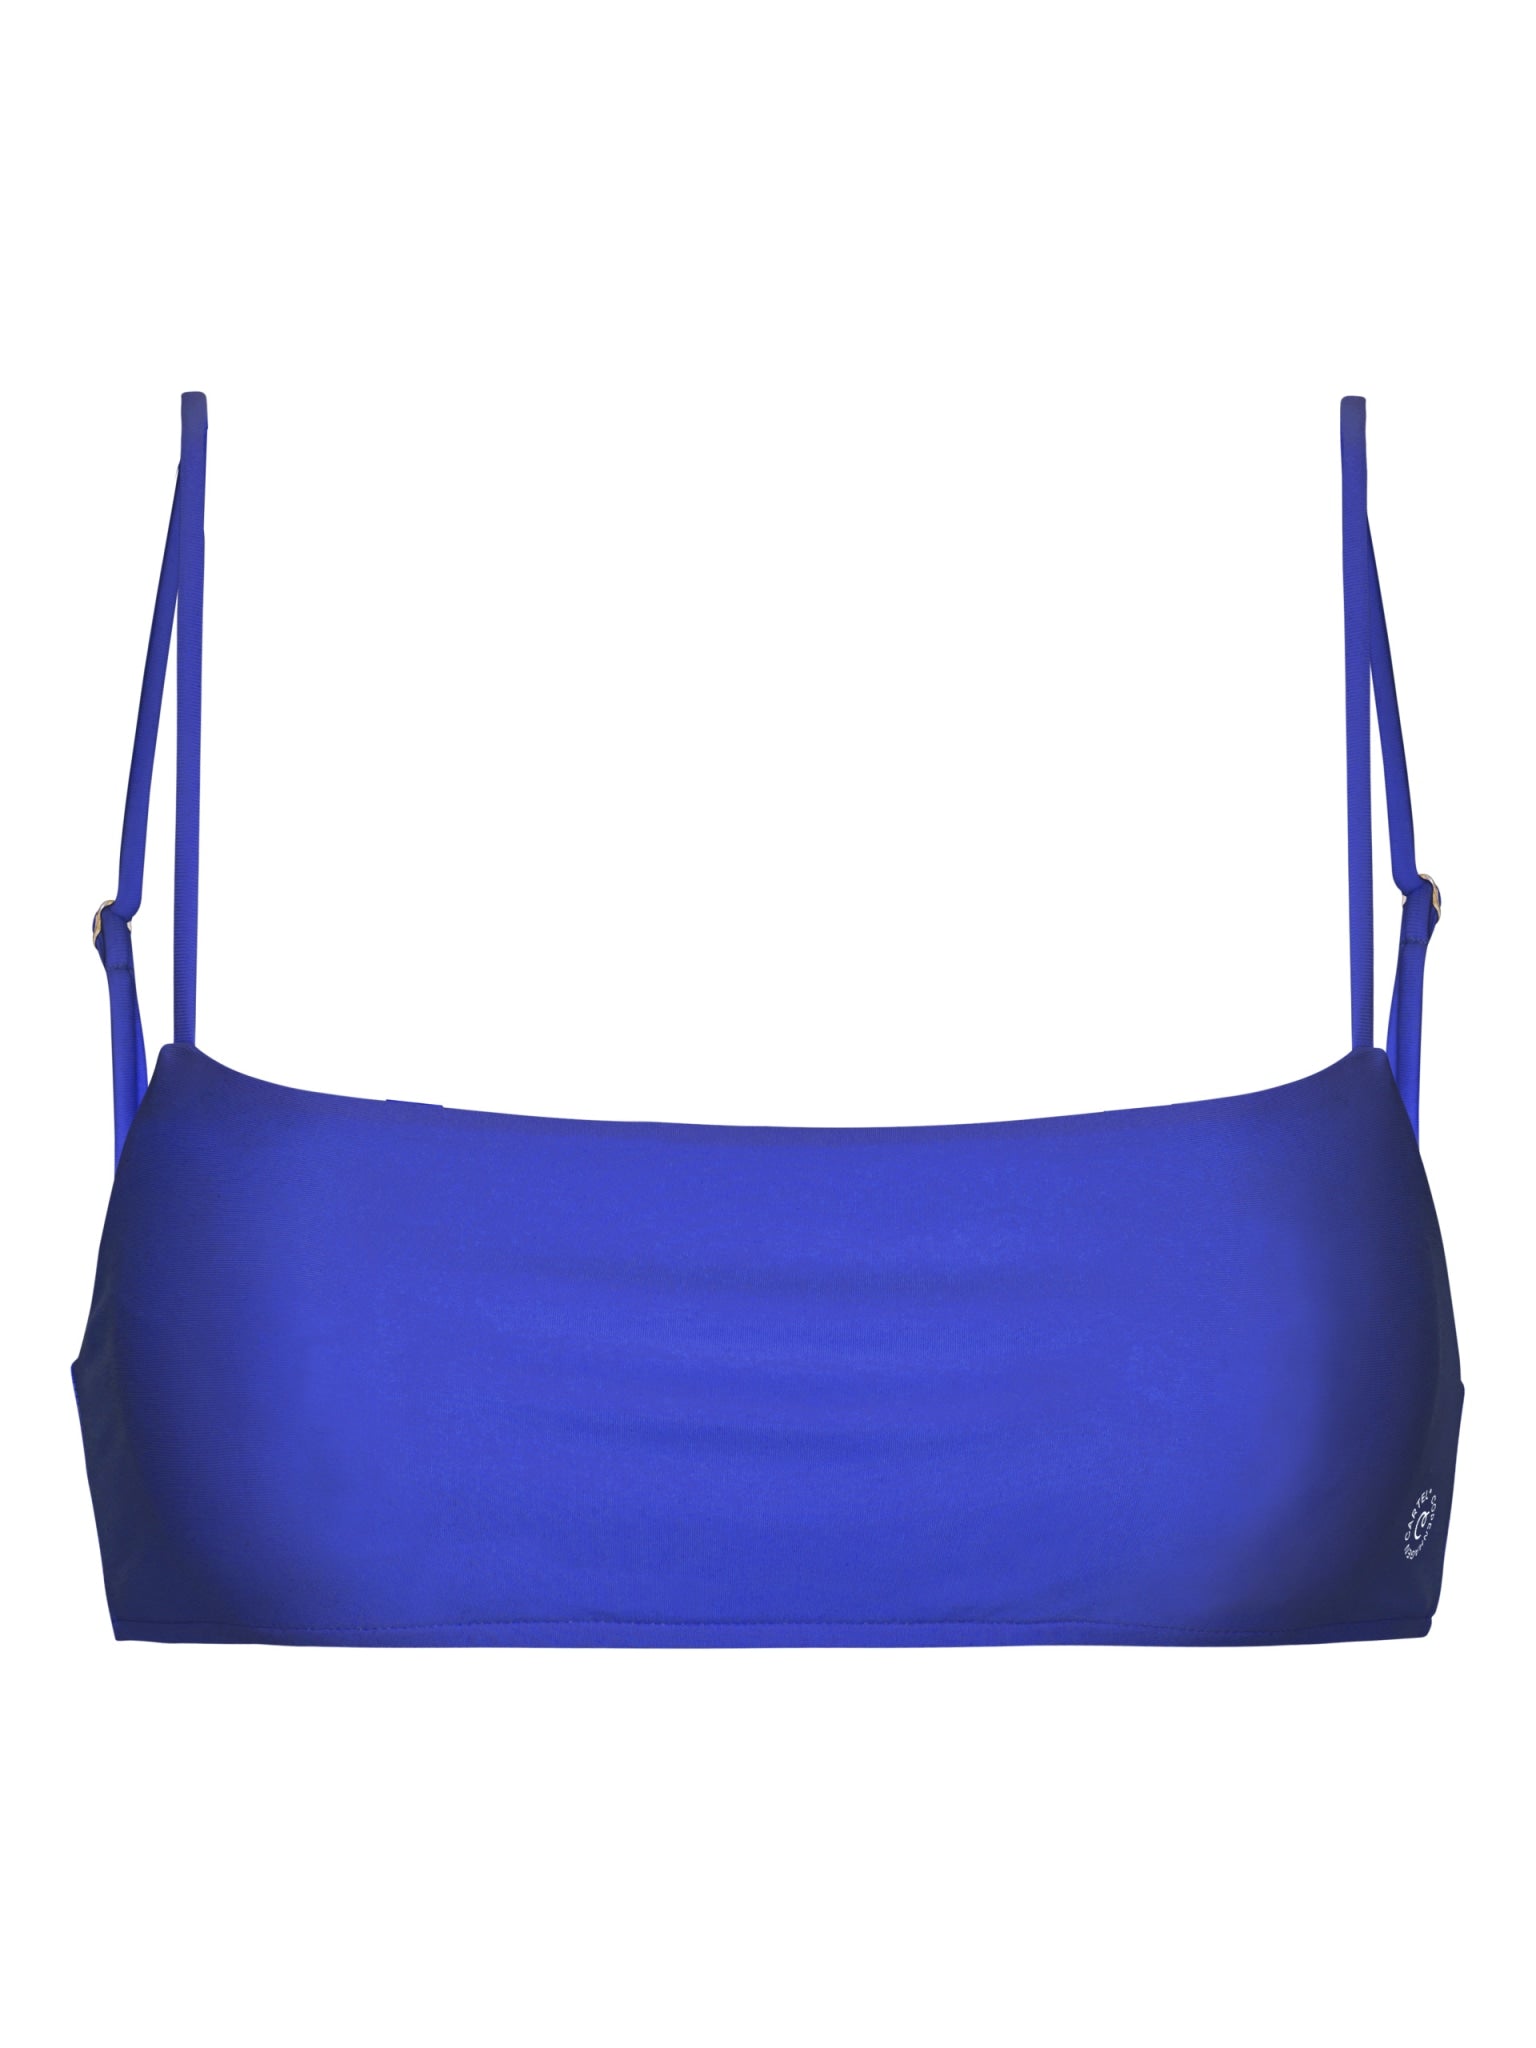 Sanur bandeau adjustable bikini top - Cartel Blue